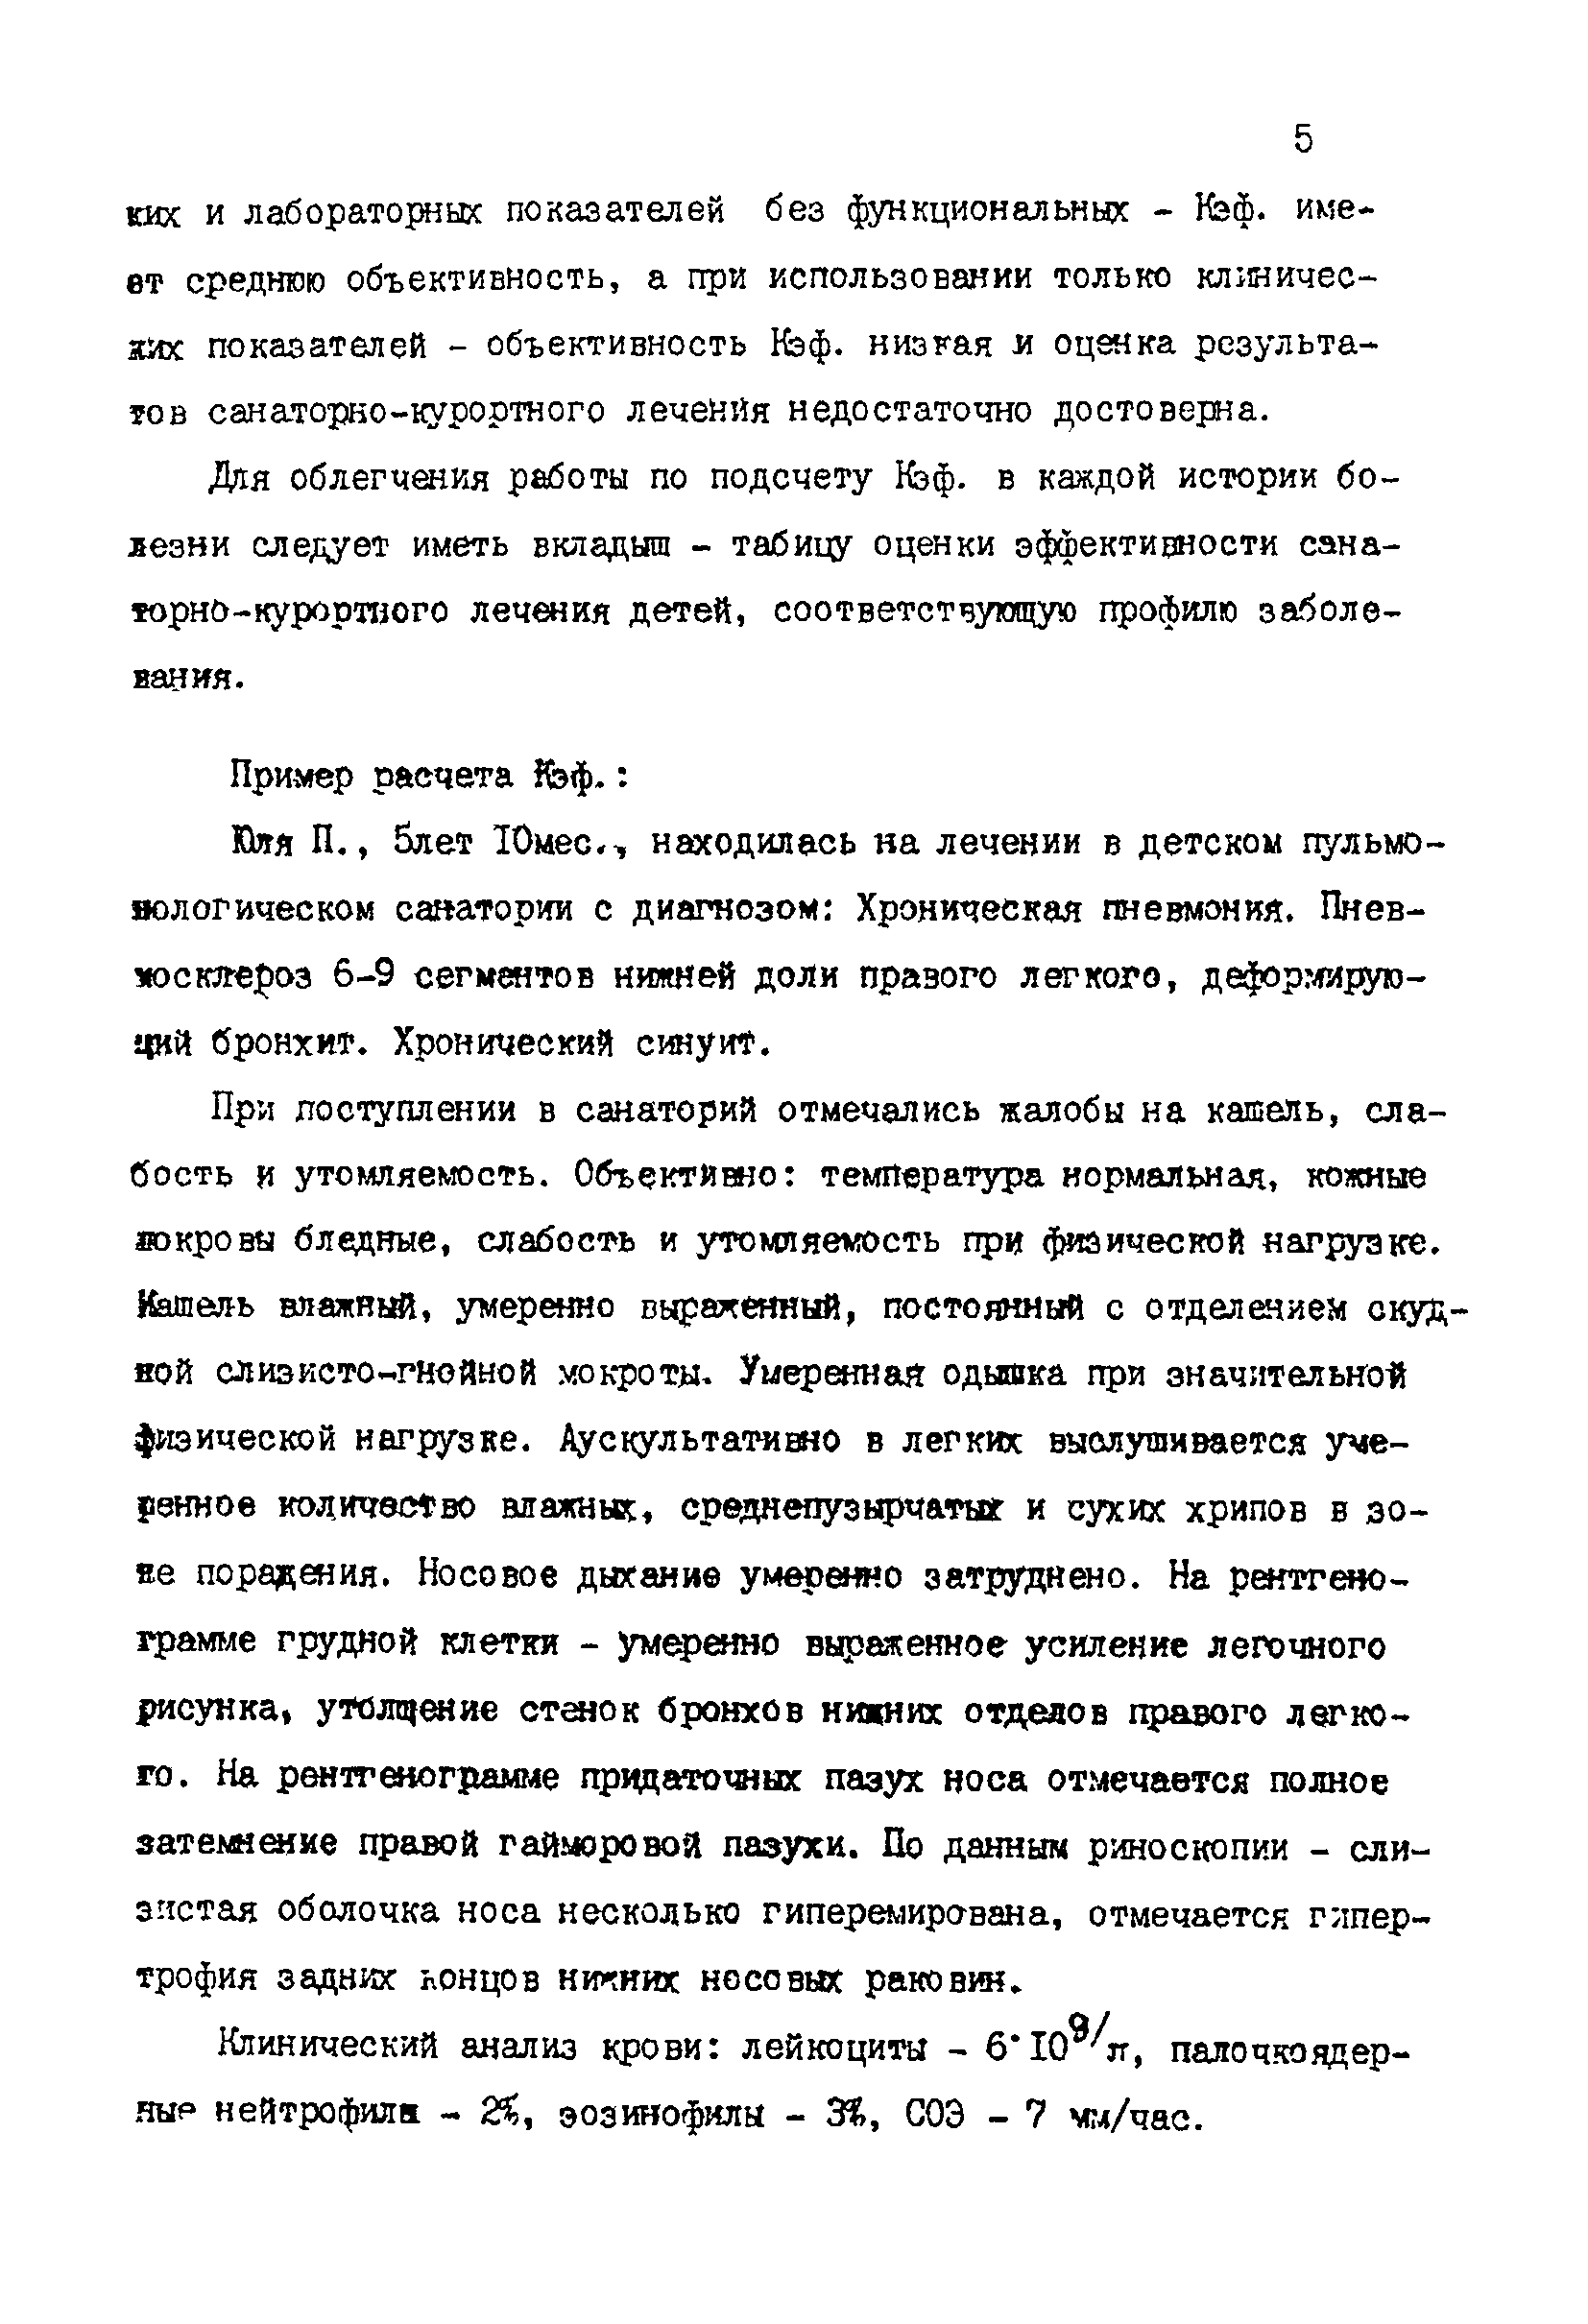 Методические рекомендации 12-15/6-39